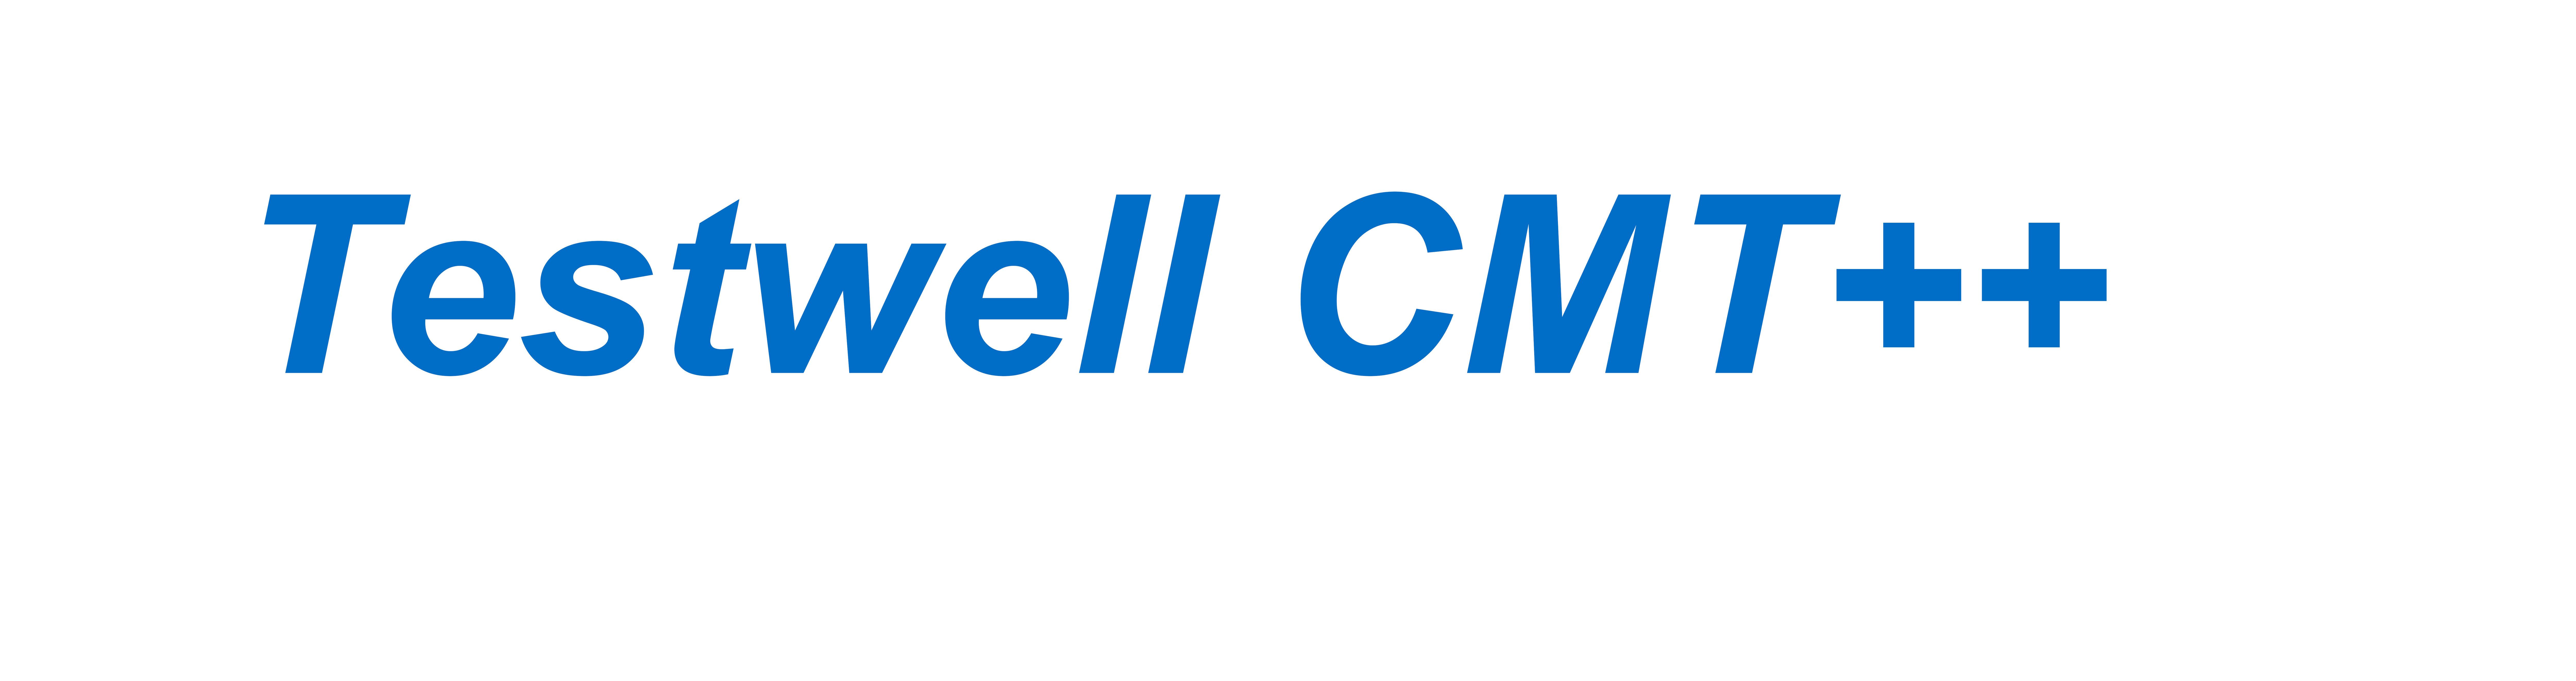 Testwell CMT++ Logo